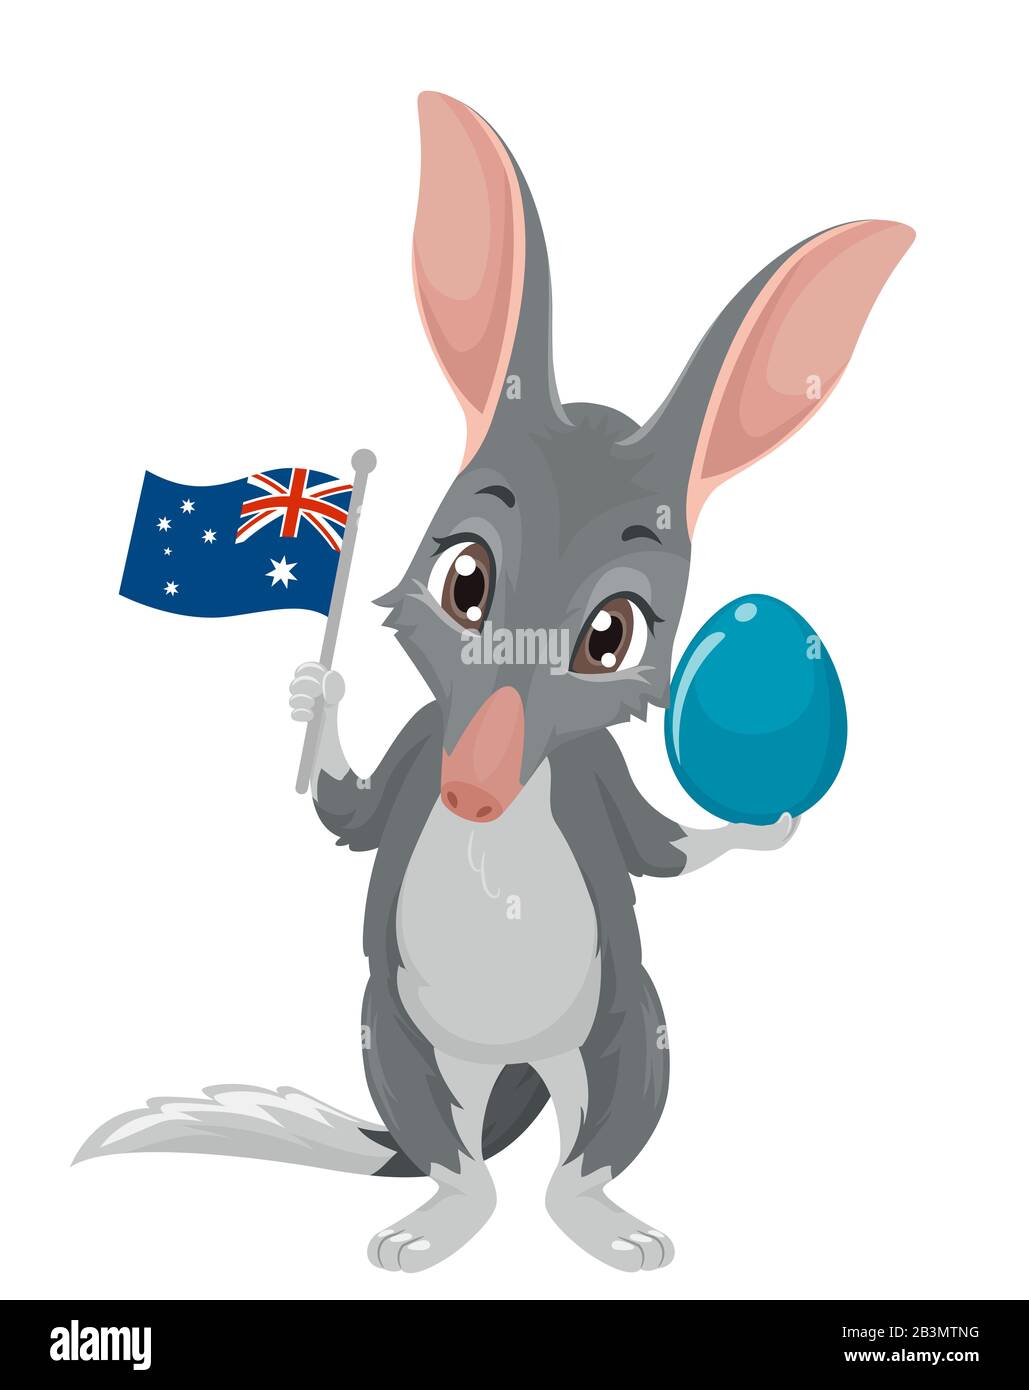 Ilustración de una mascota de la Yute Bilby Que Posee una bandera australiana y un huevo de Pascua Foto de stock